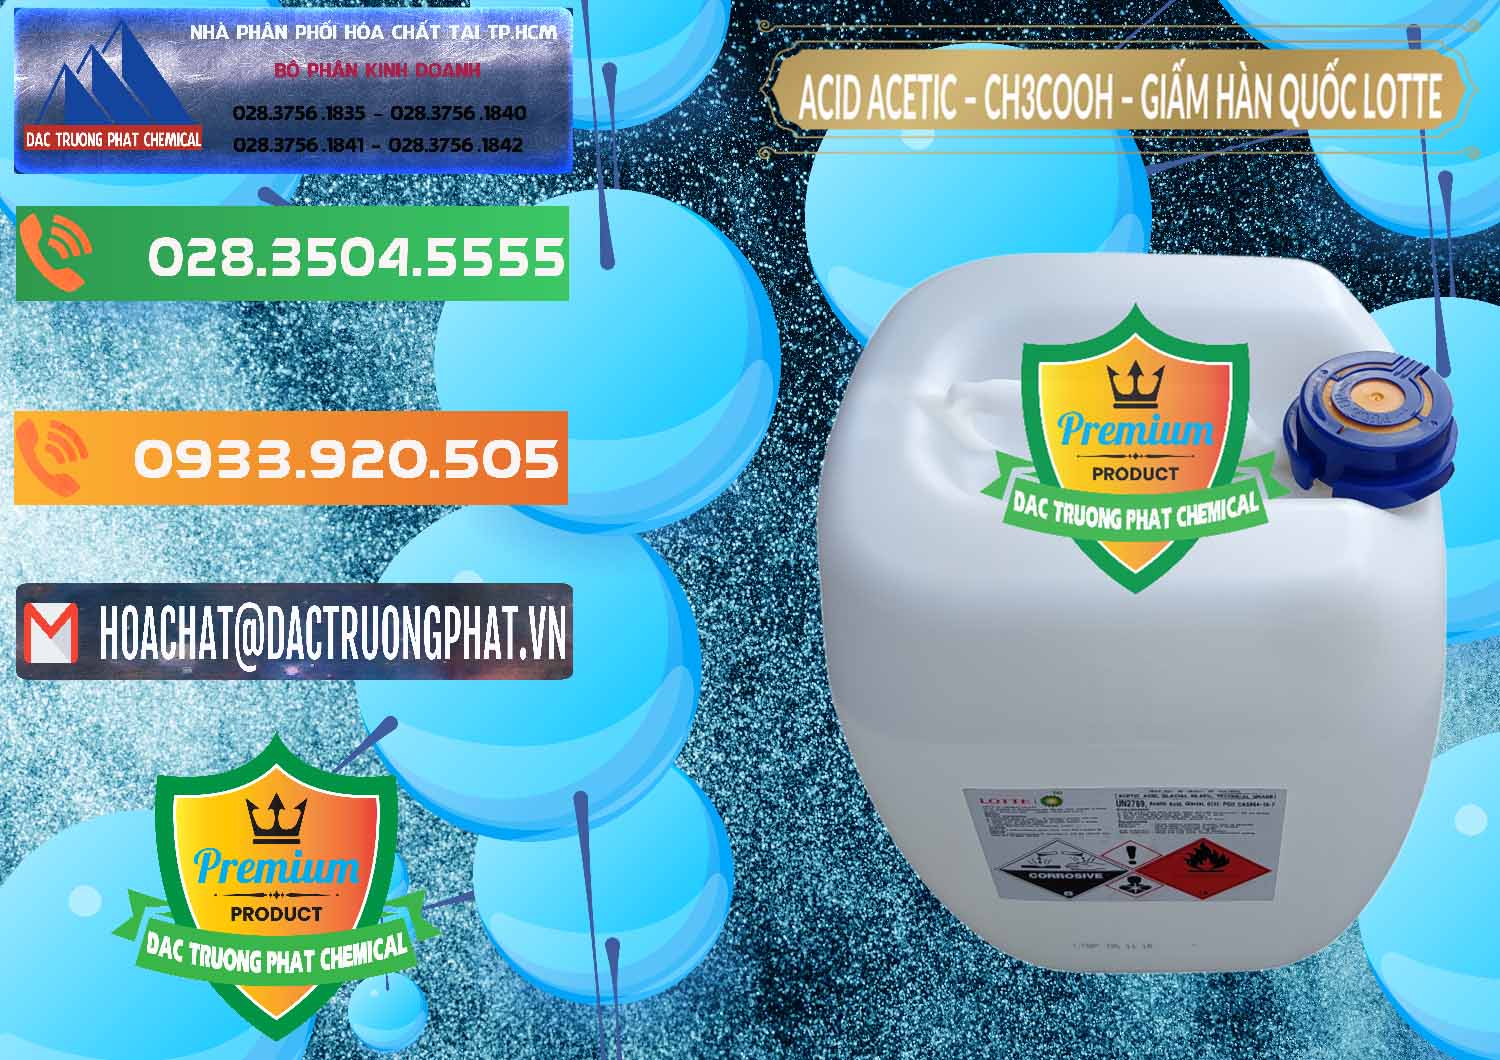 Công ty chuyên phân phối - bán Acetic Acid – Axit Acetic Hàn Quốc Lotte Korea - 0002 - Nhập khẩu và phân phối hóa chất tại TP.HCM - hoachatxulynuoc.com.vn